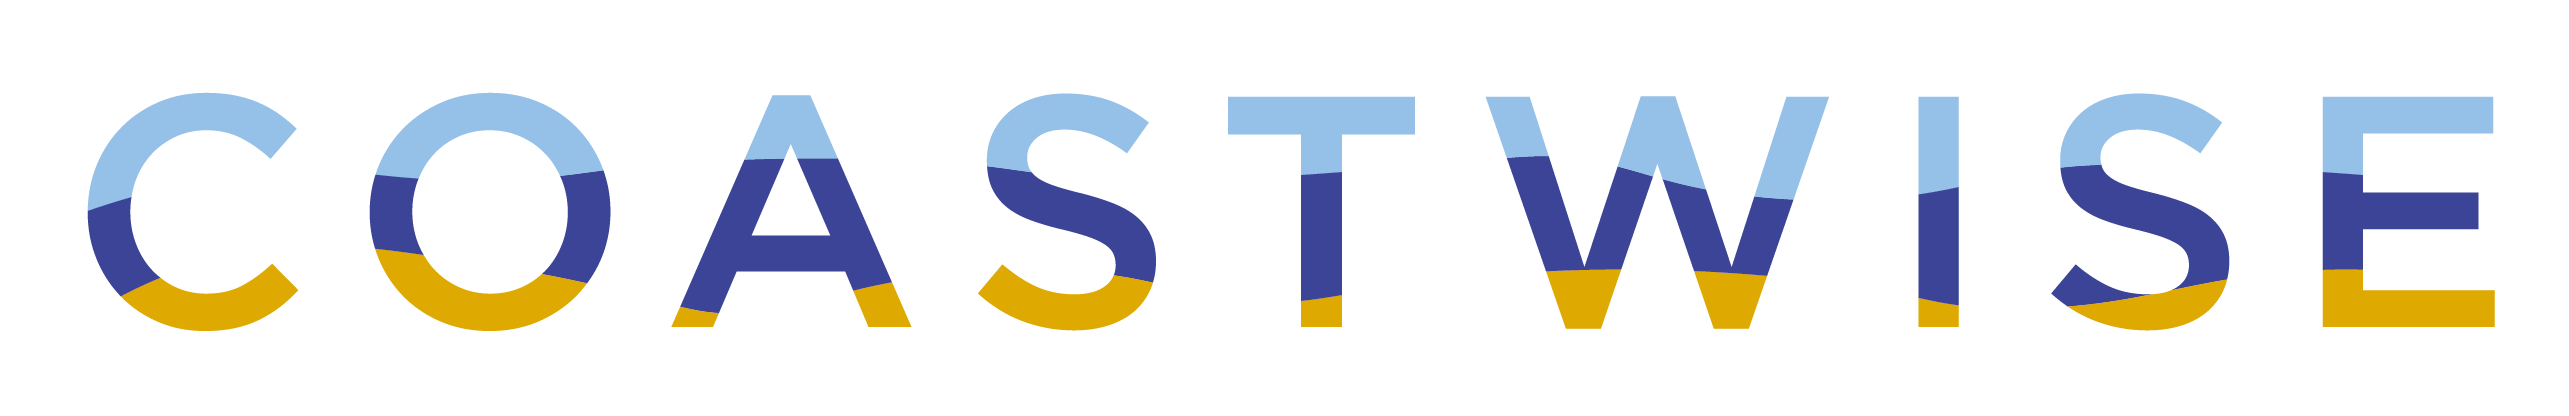 Coastwise logo